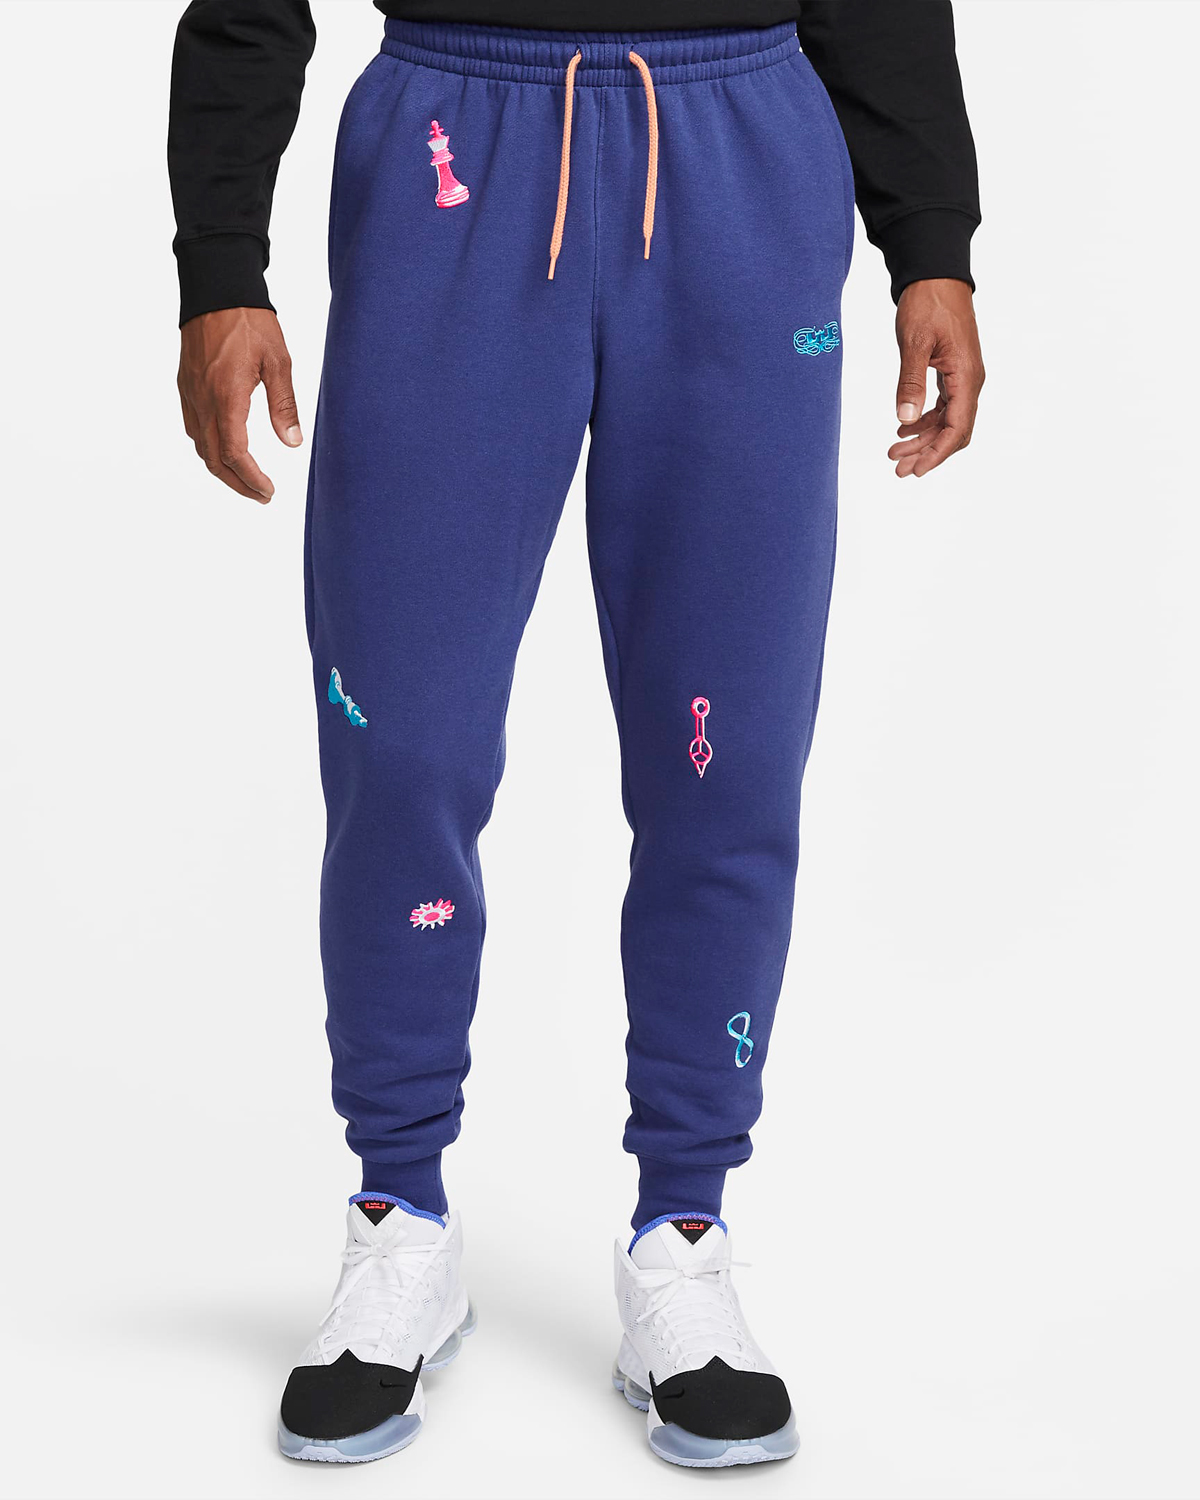 Nike-LeBron-Fleece-Pants-Deep-Royal-Blue-Laser-Blue-1